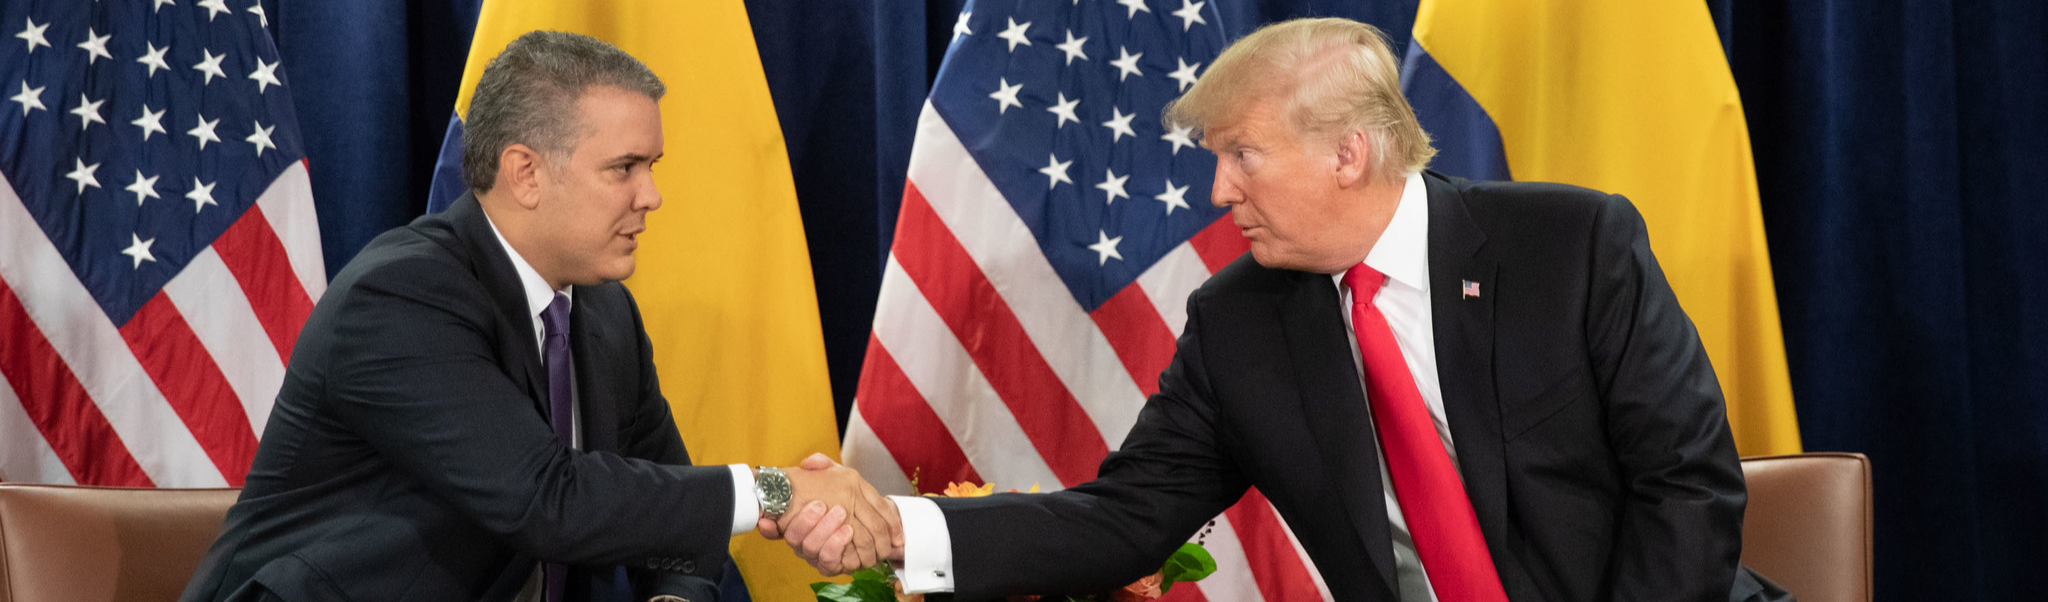 EUA tentam instaurar uma guerra entre Colômbia e Venezuela, diz líder colombiano